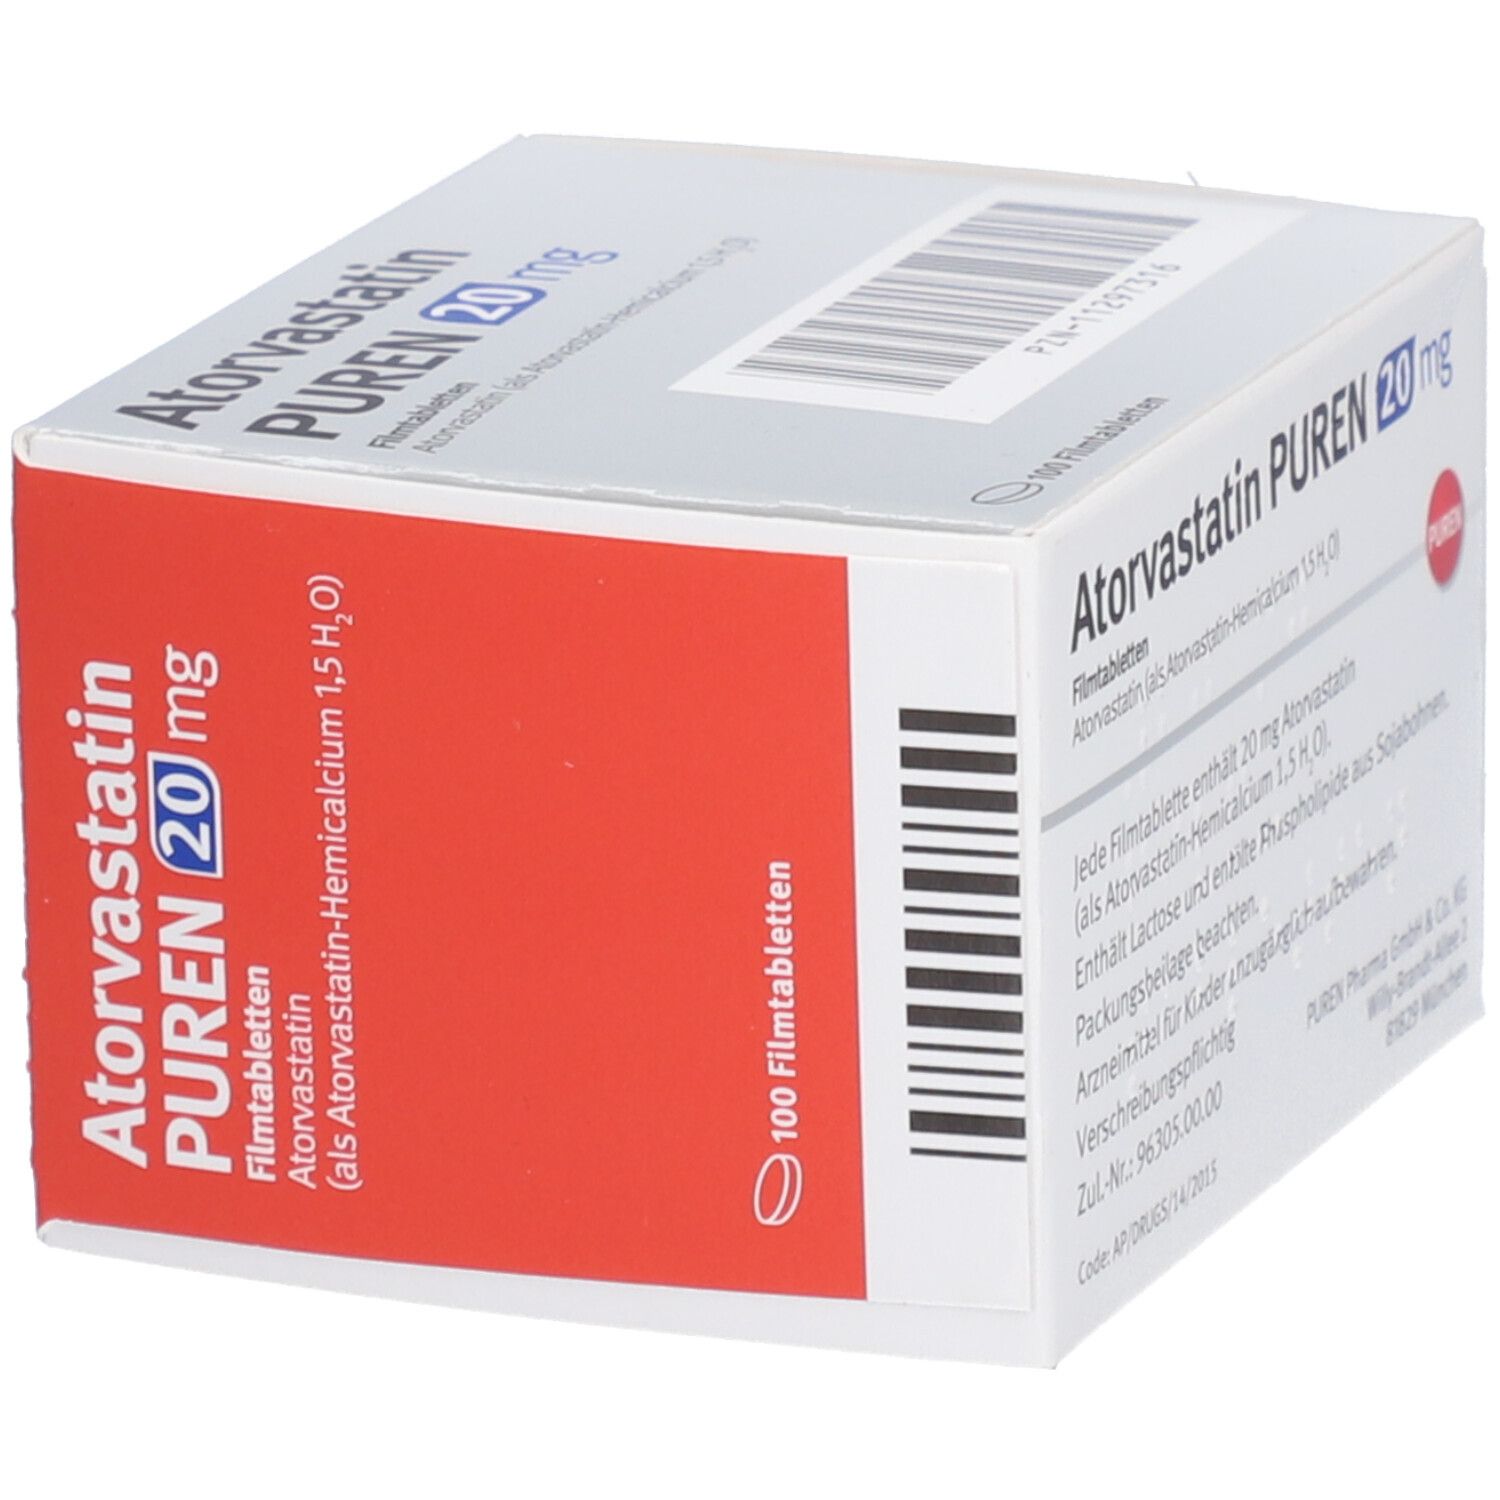 Atorvastatin PUREN 20 mg